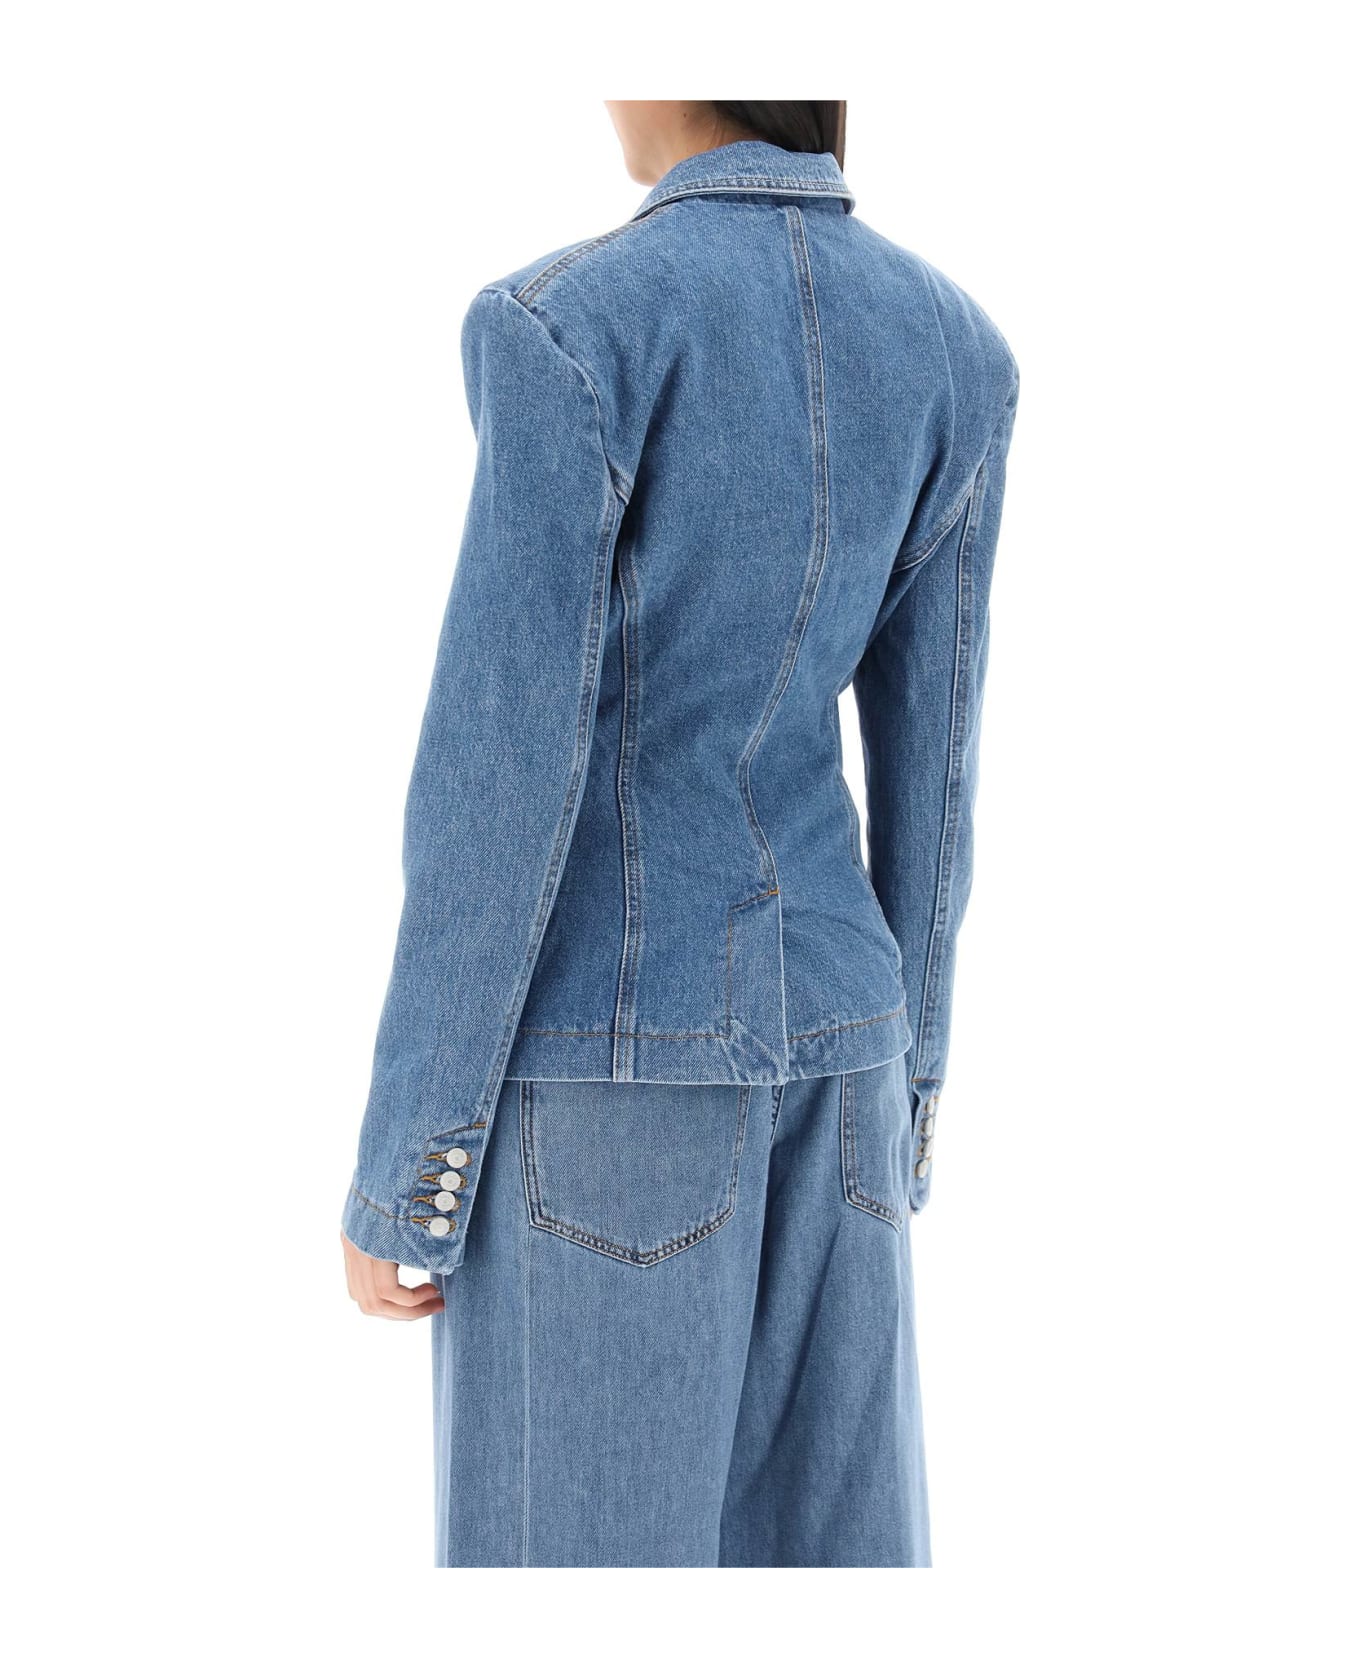 Magda Butrym Single-breasted Jacket In Denim - BLUE (Blue)